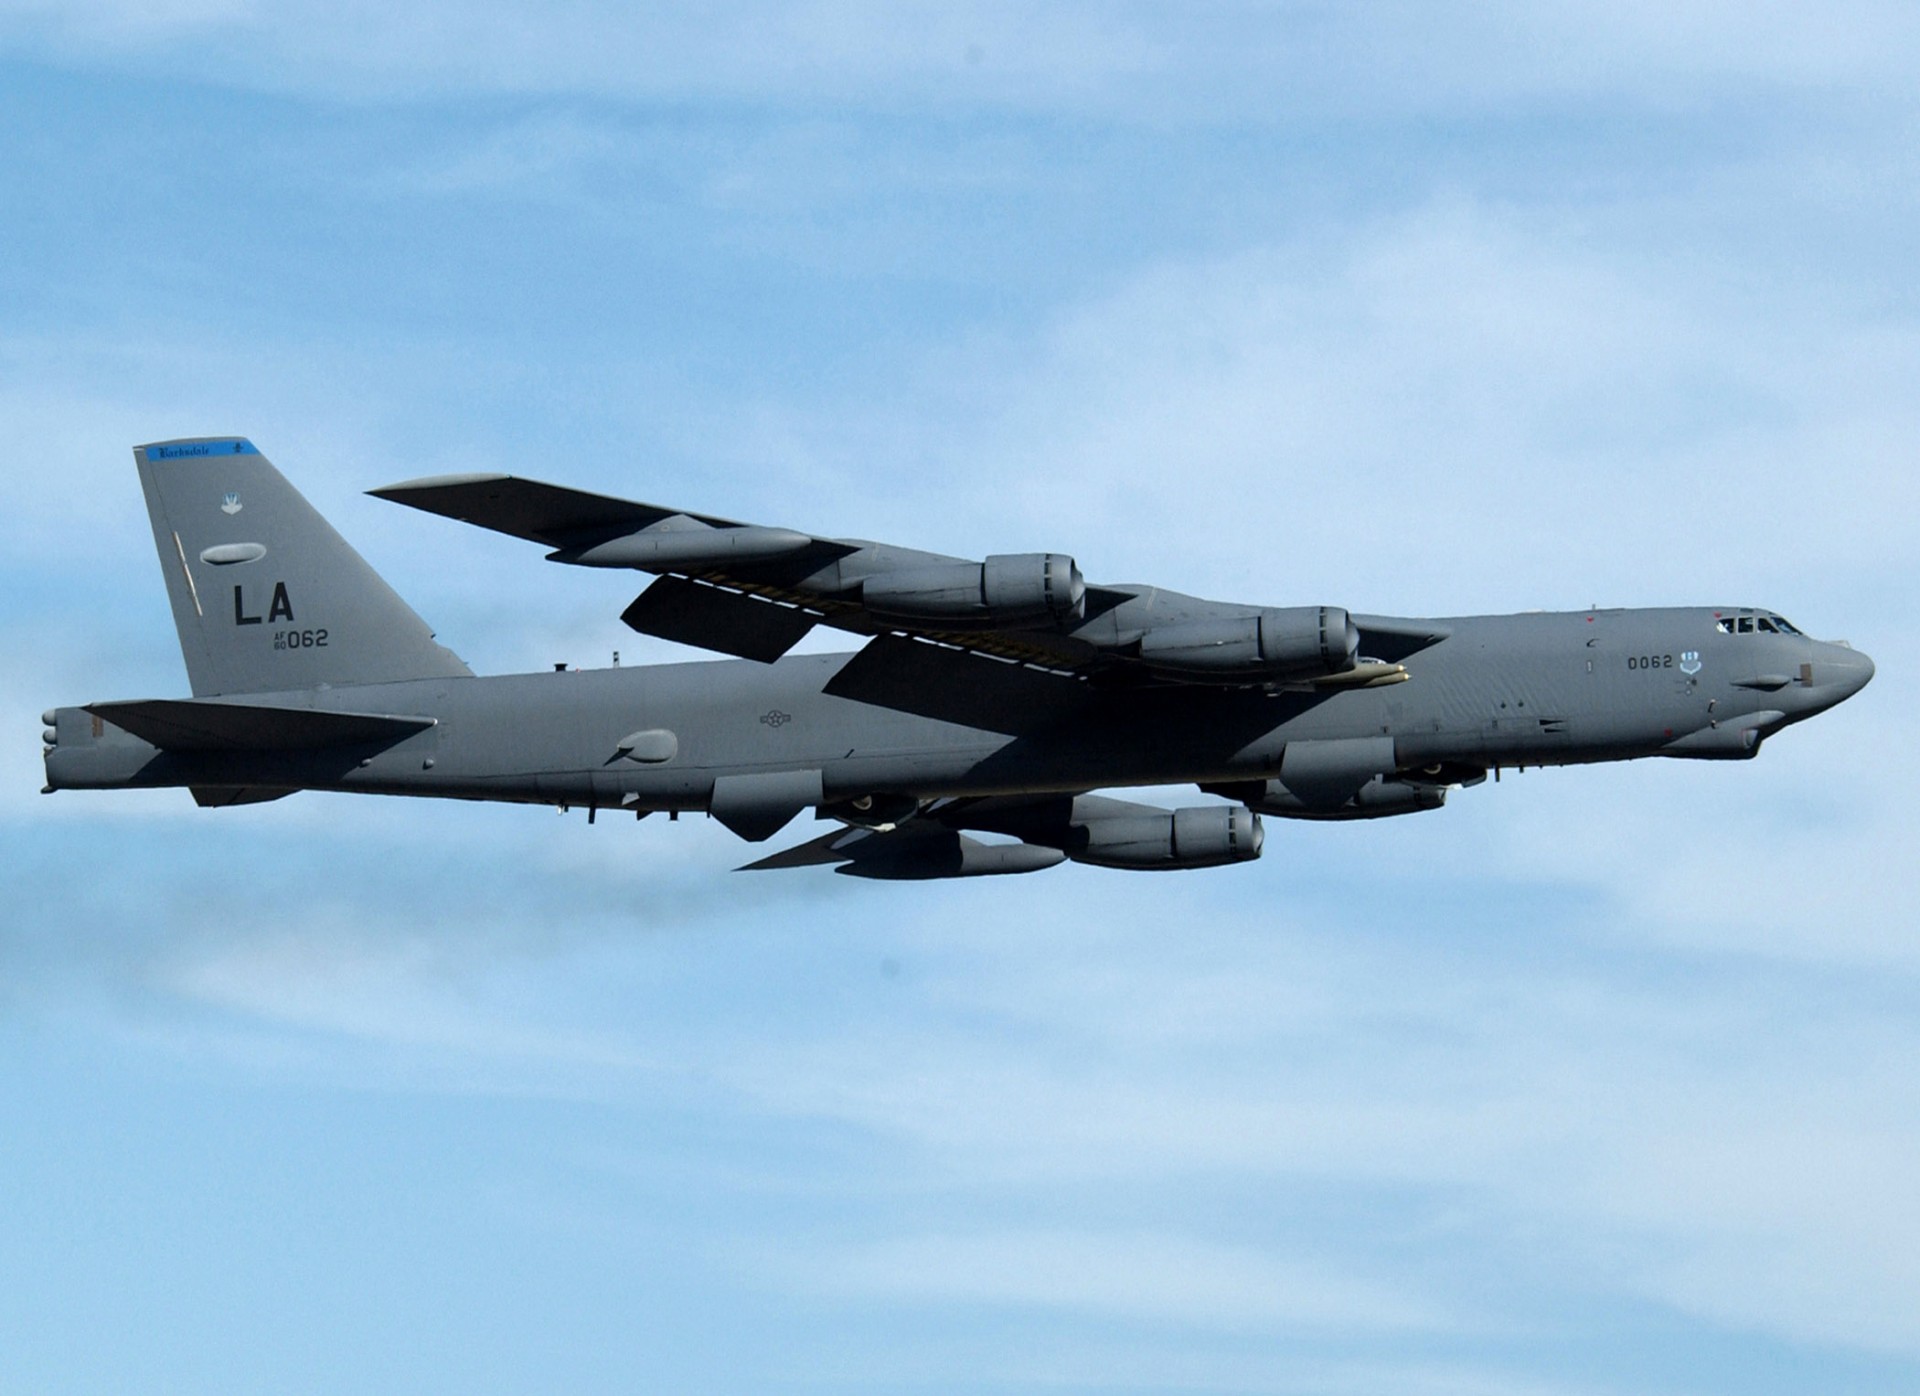 Wprowadzone na uzbrojenie jeszcze na początku lat 60. XX wieku bombowce B-52H mogą zyskać środki zakłócające oparte na grafenie, tworzone z wykorzystaniem nanotechnologii. Pierwsze wersje bombowców B-52 zostały wprowadzone na uzbrojenie jeszcze w latach 50. ubiegłego wieku. Fot. Master Sgt. Mike Kaplan/USAF.